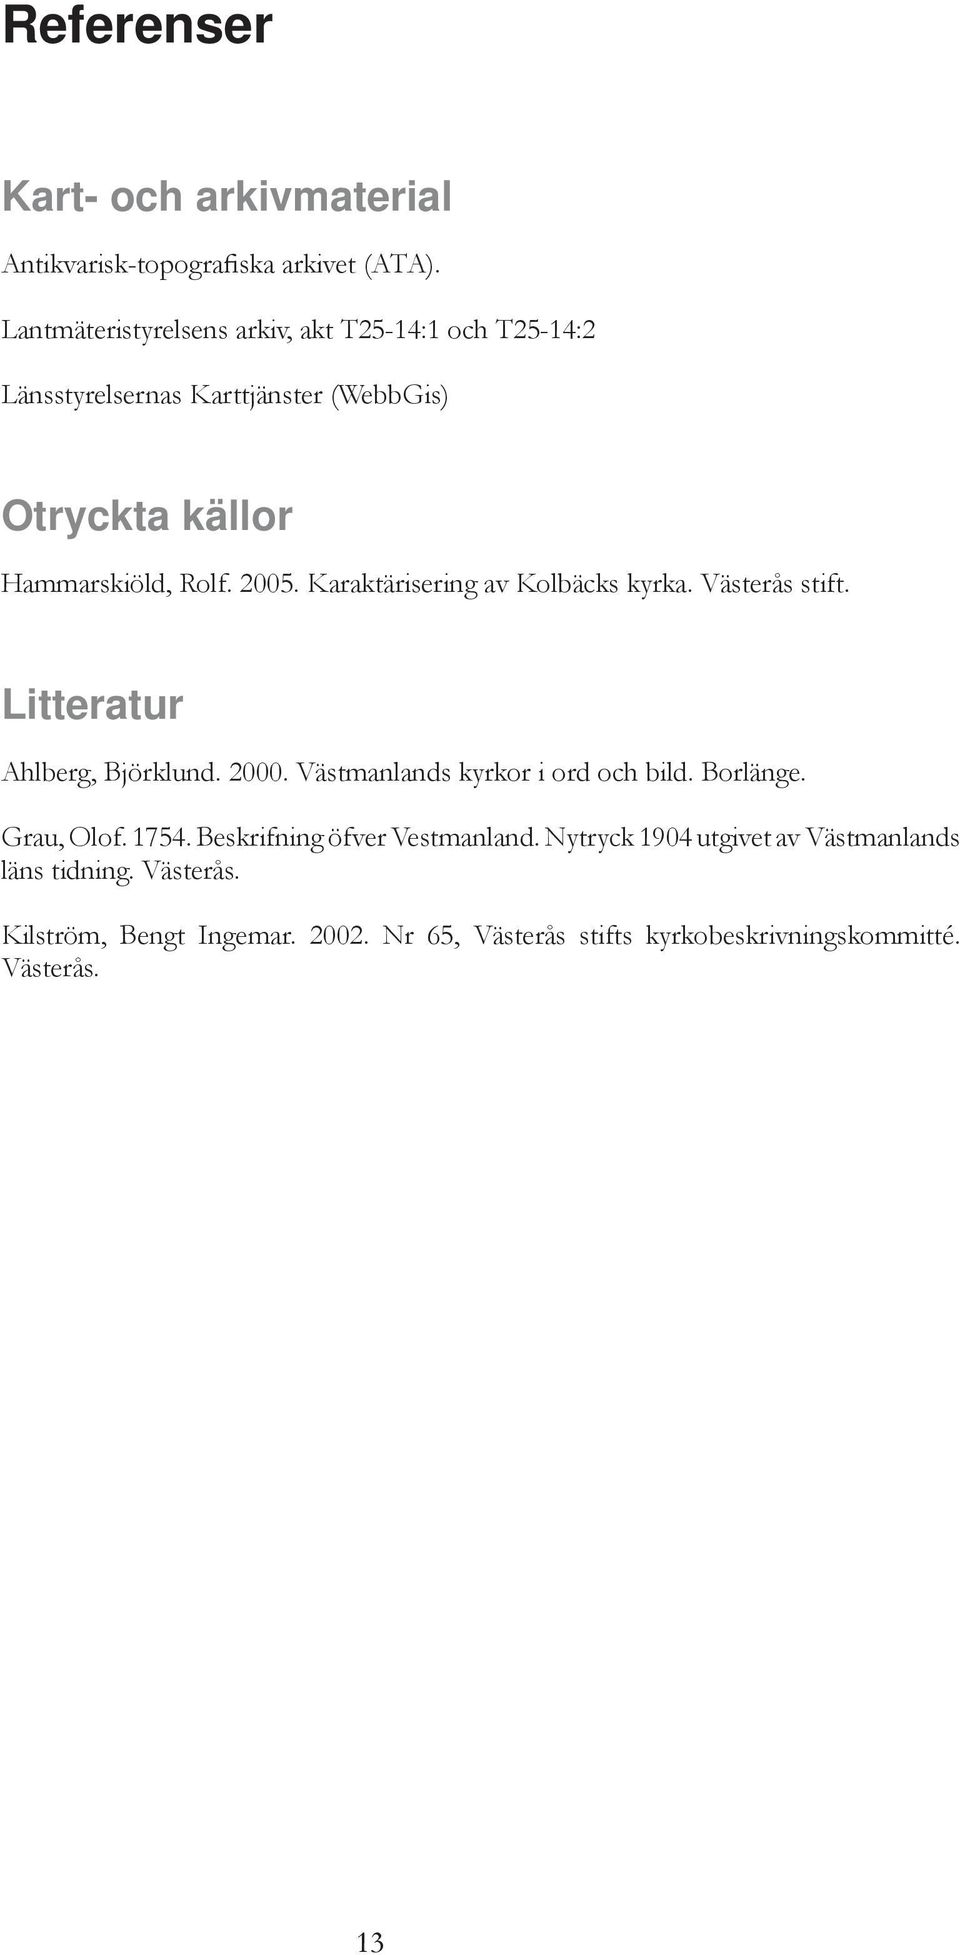 Karaktärisering av Kolbäcks kyrka. Västerås stift. Litteratur Ahlberg, Björklund. 2000. Västmanlands kyrkor i ord och bild. Borlänge.